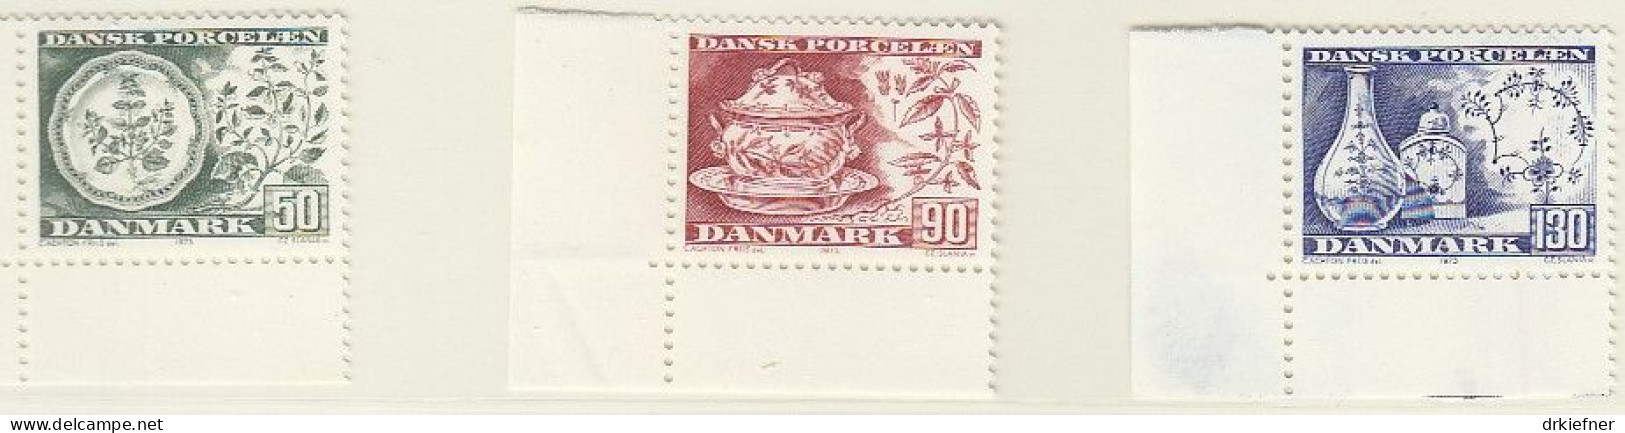 DÄNEMARK  589-591, Postfrisch **, Dänisches Porzellan, 1975 - Neufs